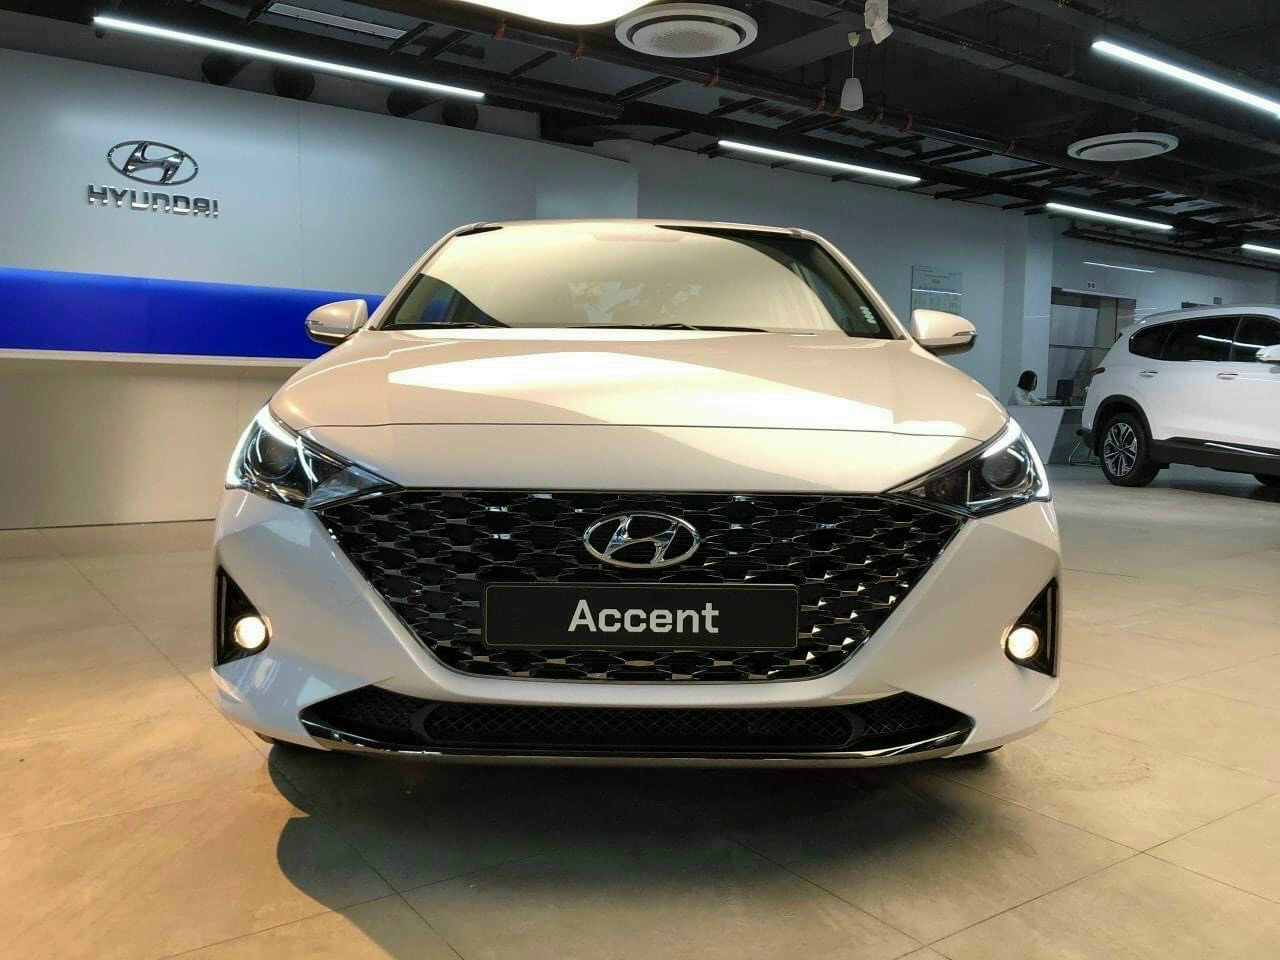 Lý do gì giúp Hyundai Accent luôn có doanh số dẫn đầu phân khúc? - Ảnh 2.